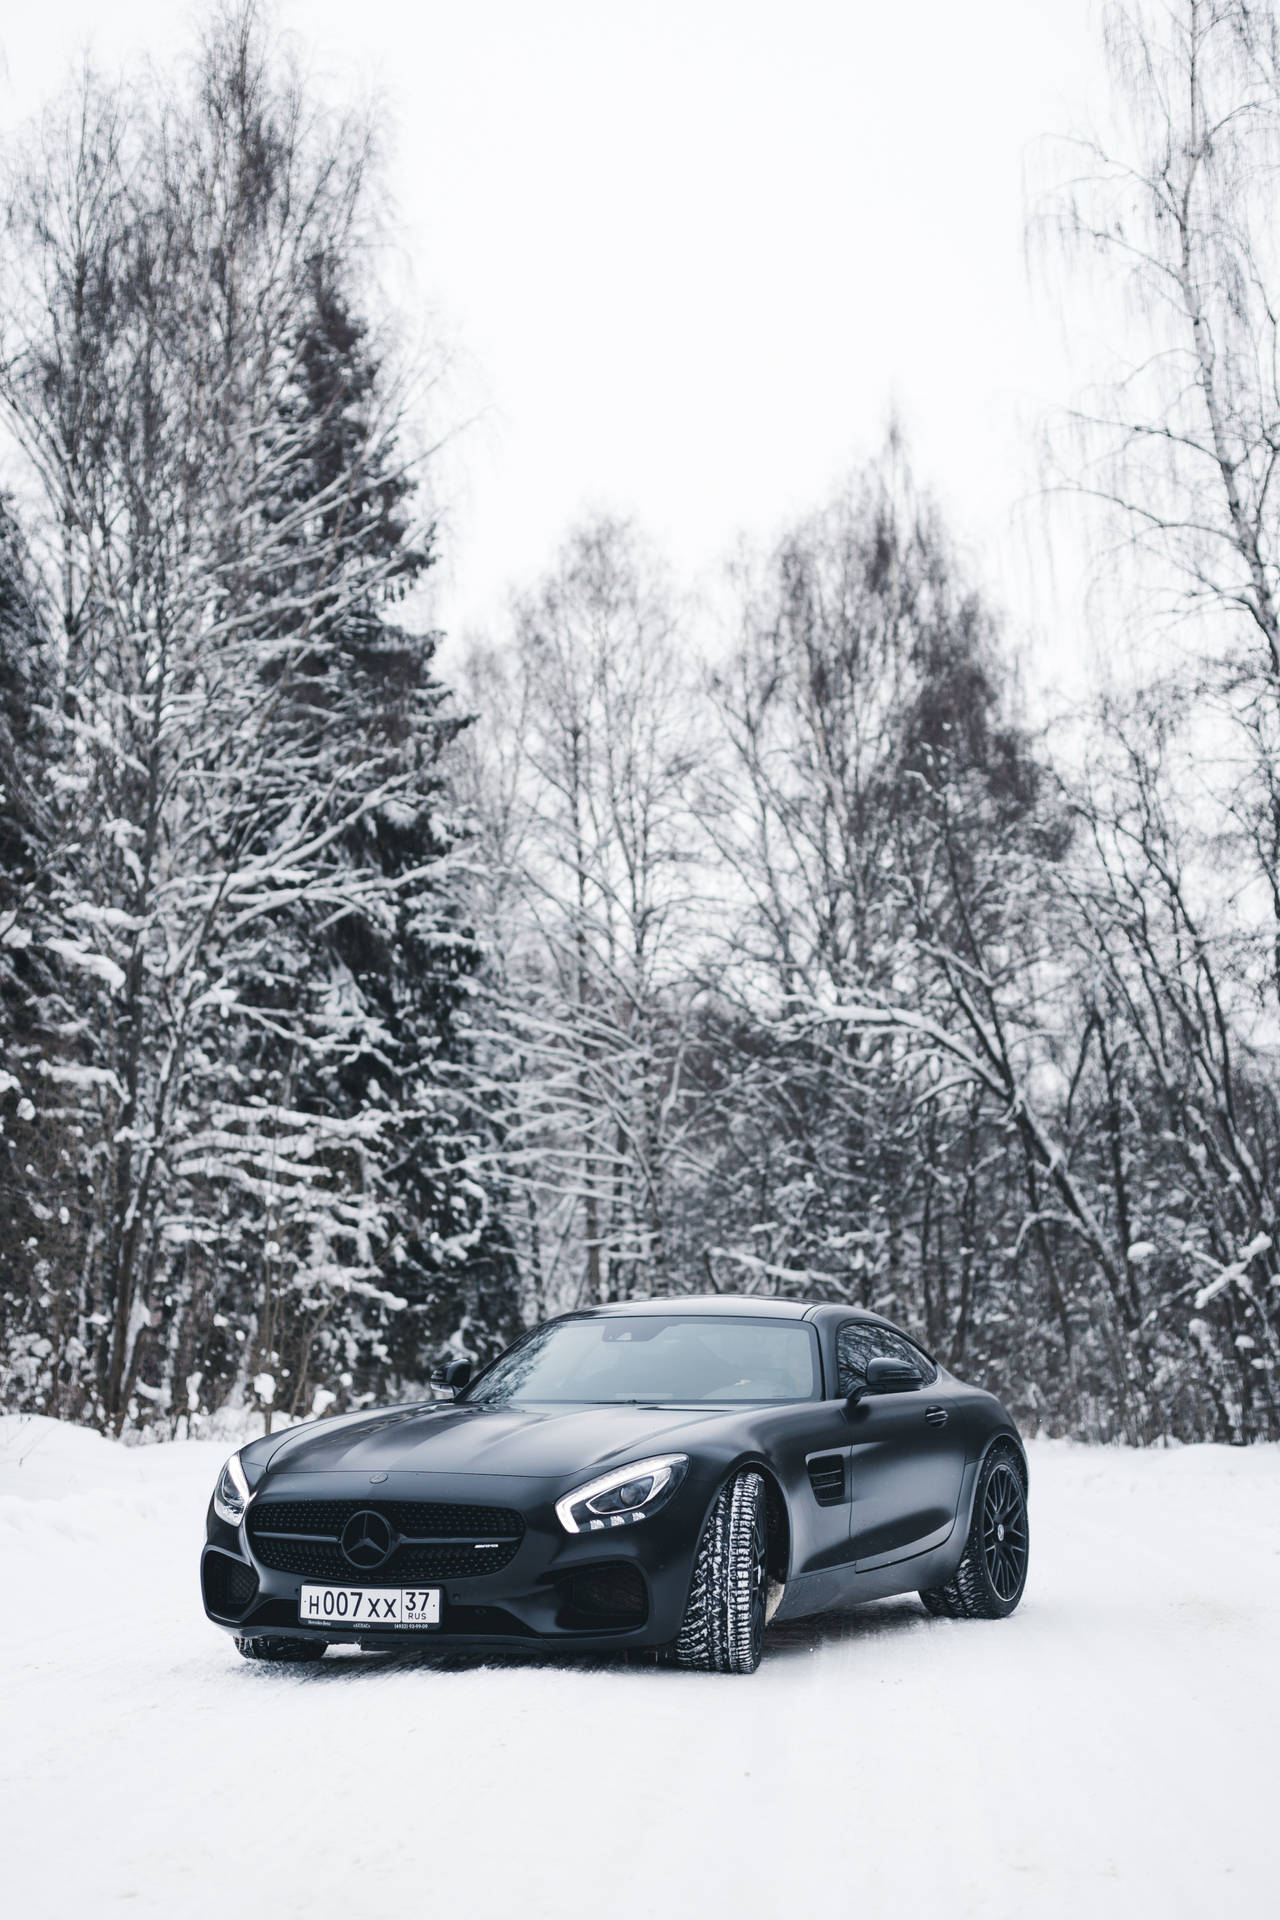 Black Mercedes-Benz AMG Wallpaper